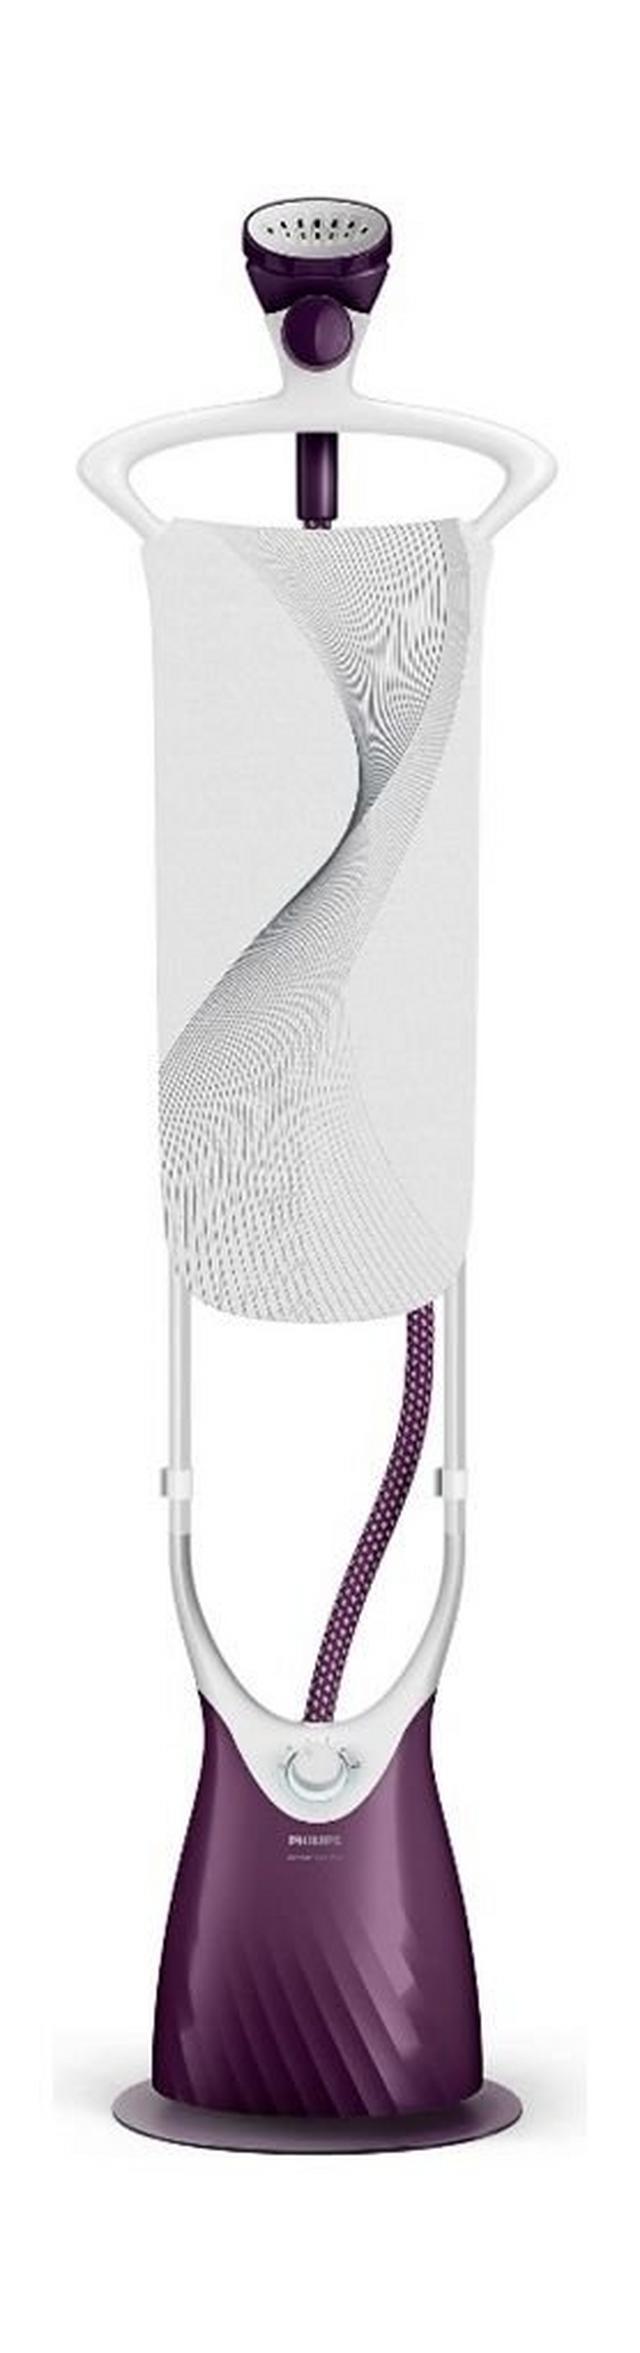 مكواة بخار عمودية كومفورت تاتش بلس للملابس من فيليبس، قدرة 2000 واط، سعة 1.8 لتر، GC558/36 - أبيض/أرجواني